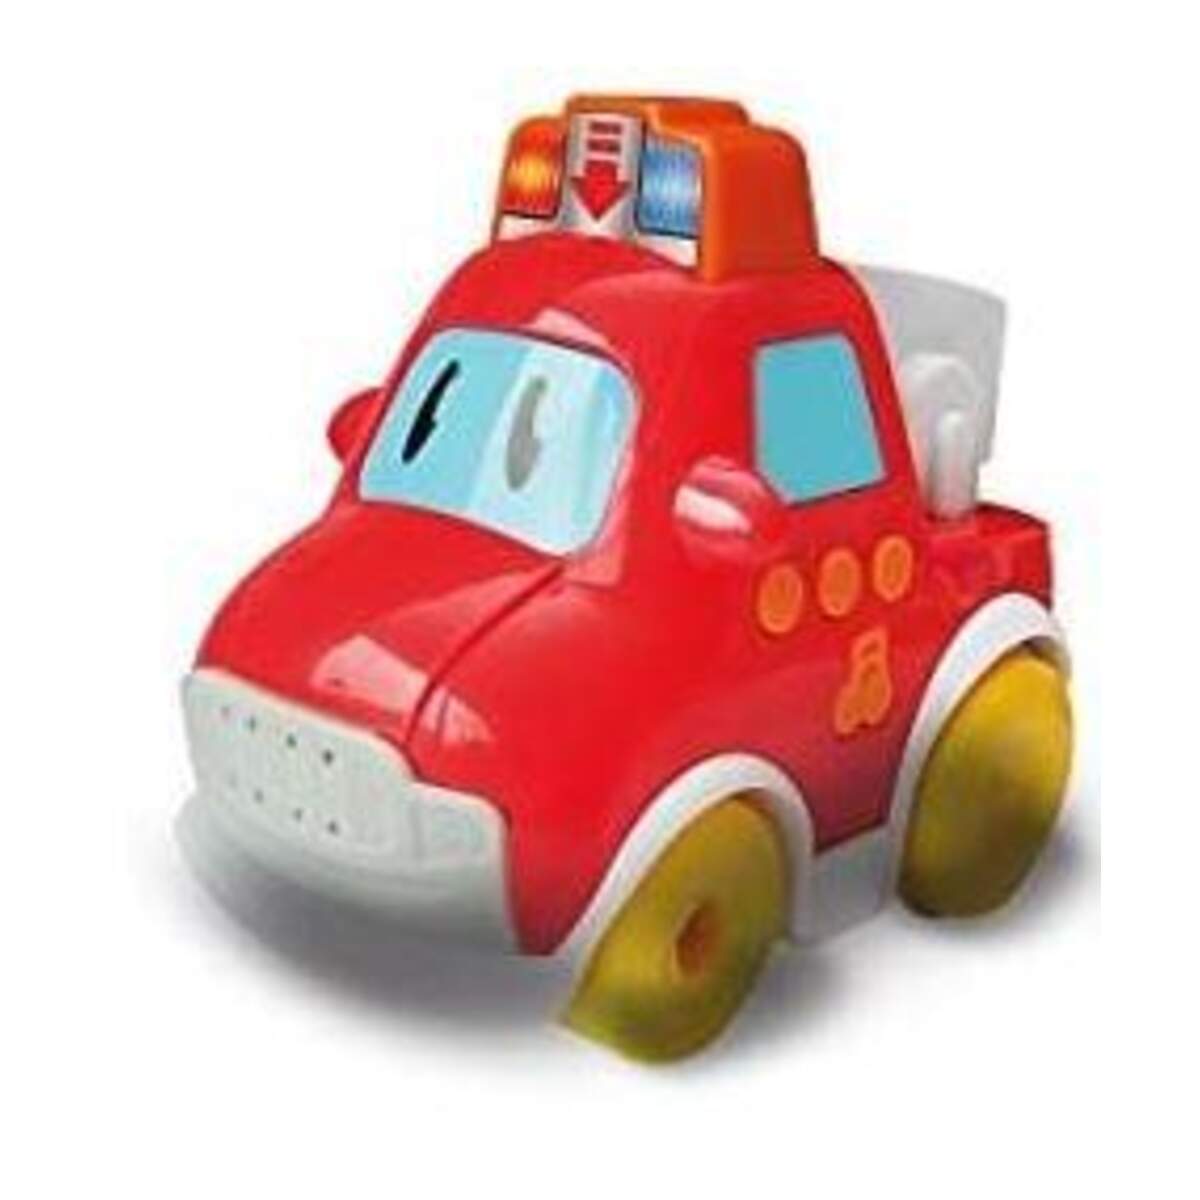 SpielMaus Baby Press & Go Fahrzeuge, 2-fach sortiert, Babyspielzeug, ca.  13x7,5x11cm, ab 12 Monaten (nicht frei wählbar) 0040774165 ▷ jetzt kaufen -  online & vor Ort